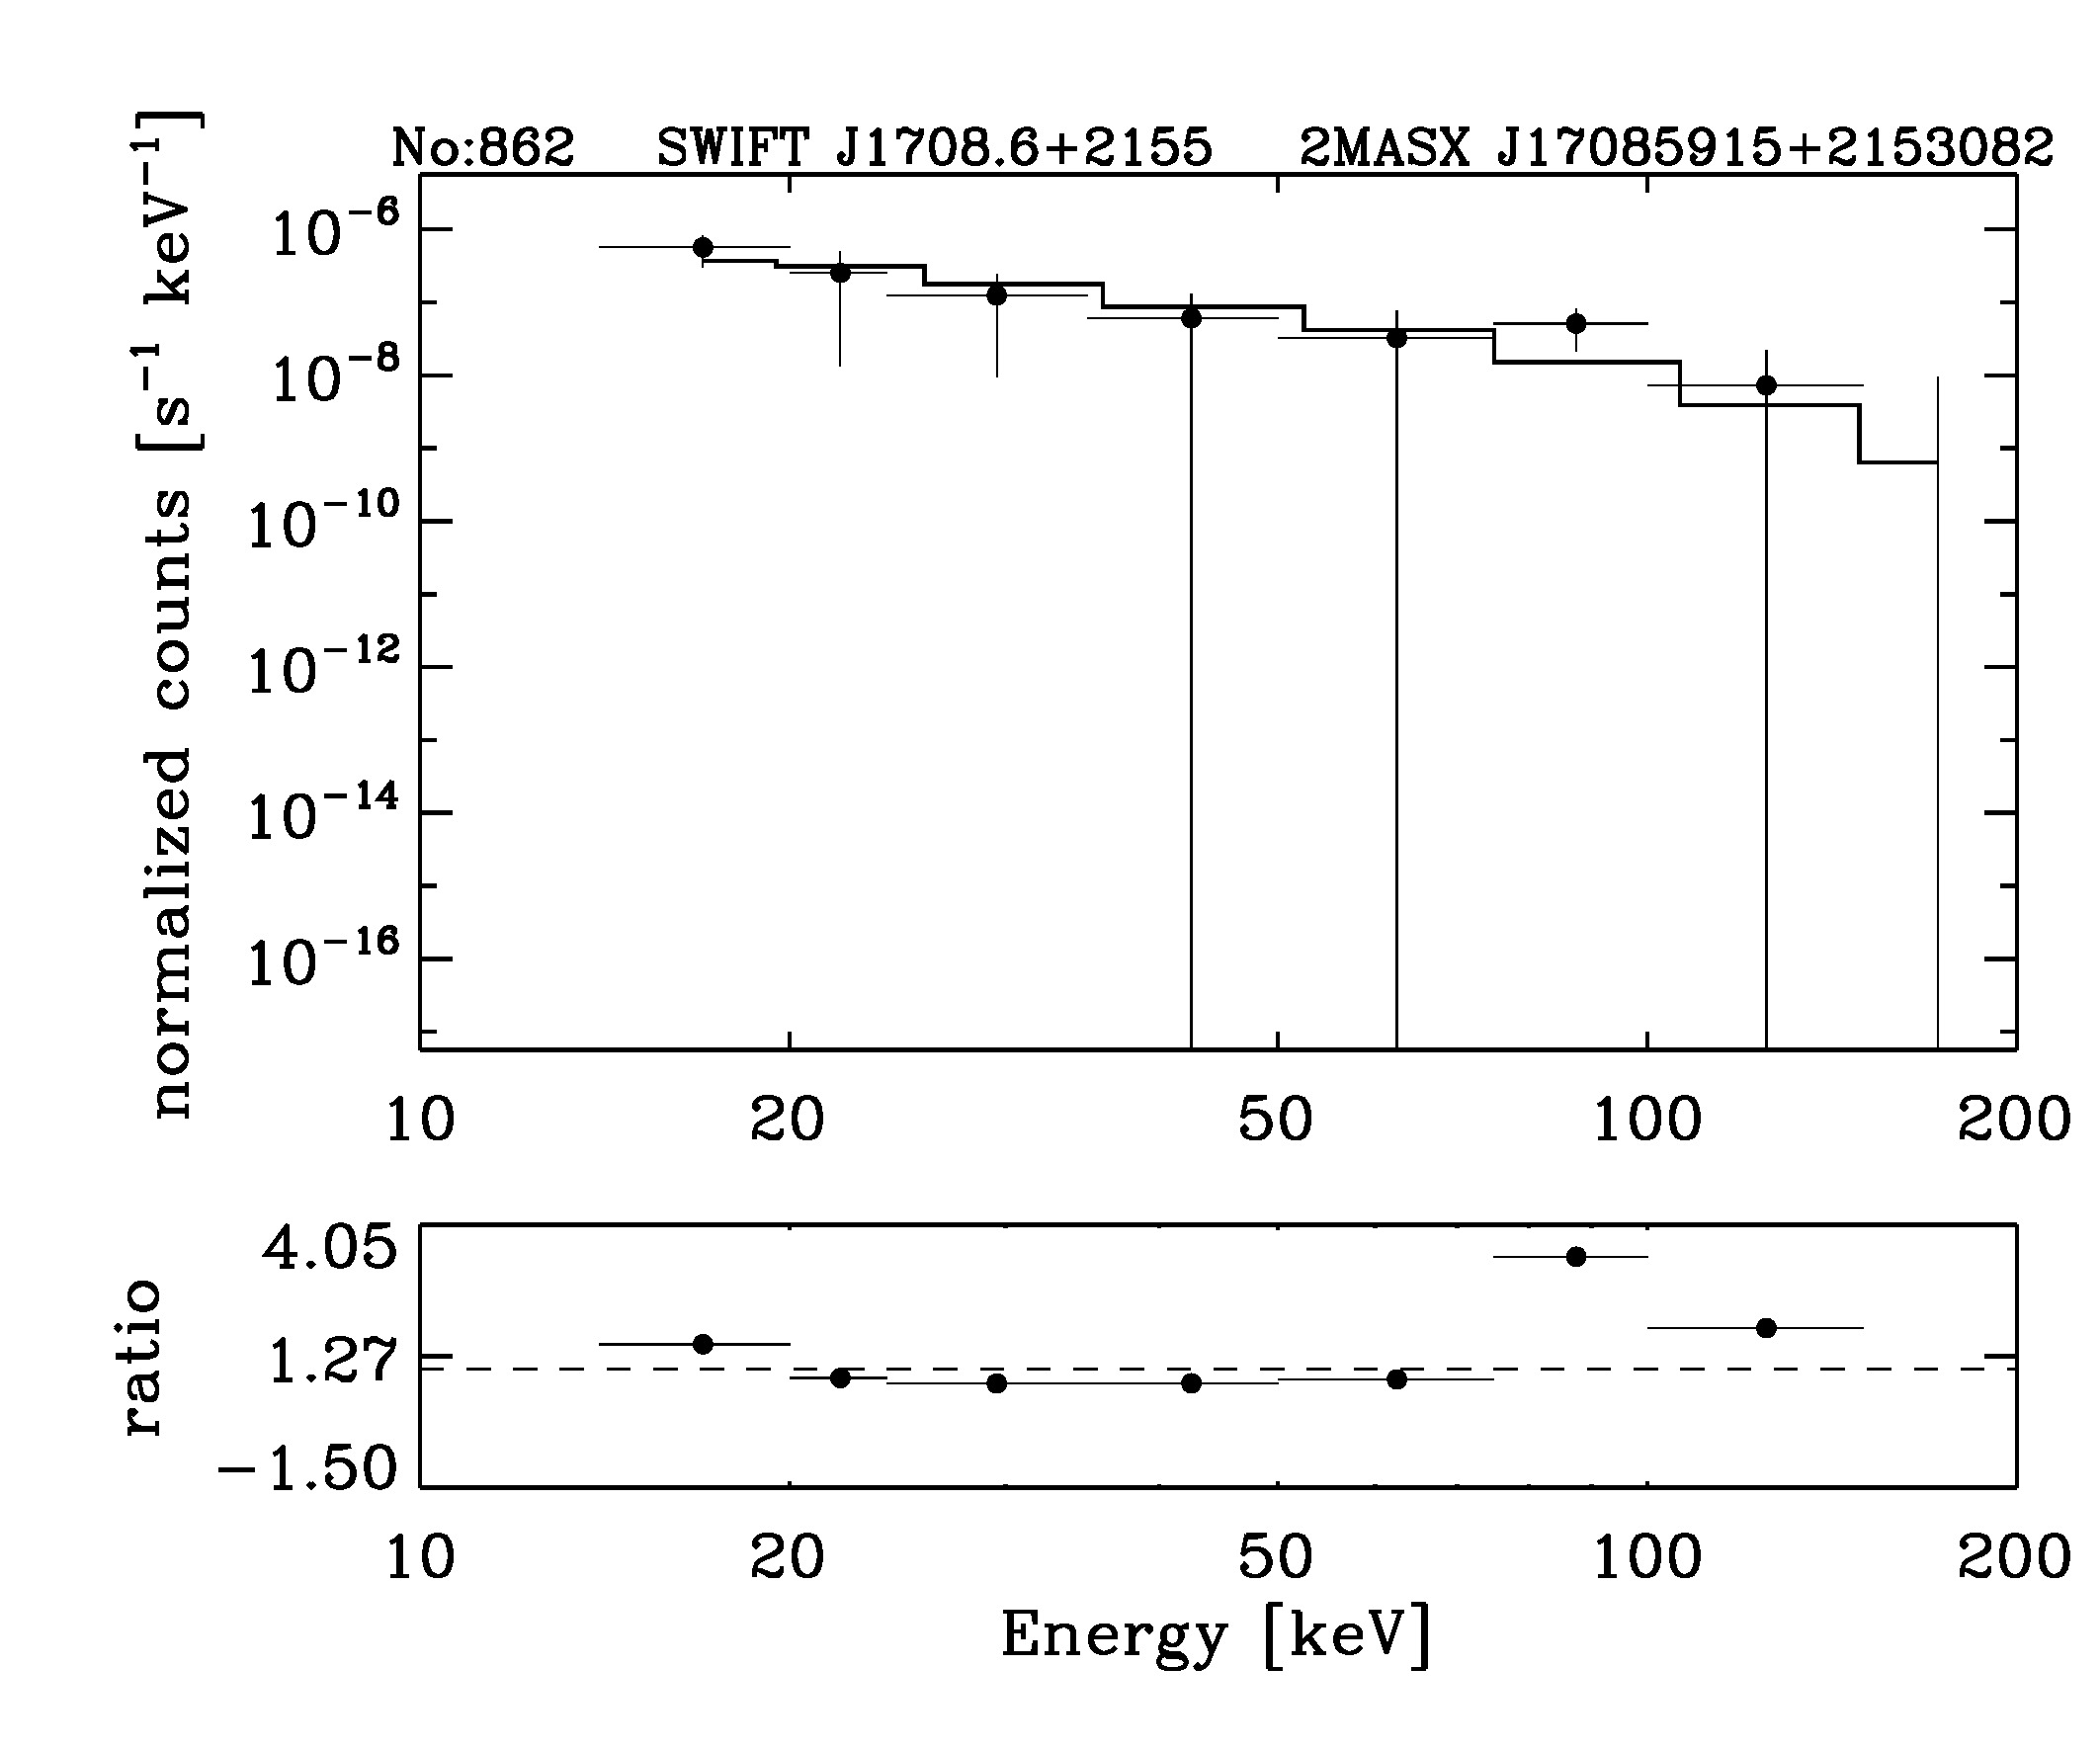 BAT Spectrum for SWIFT J1708.6+2155